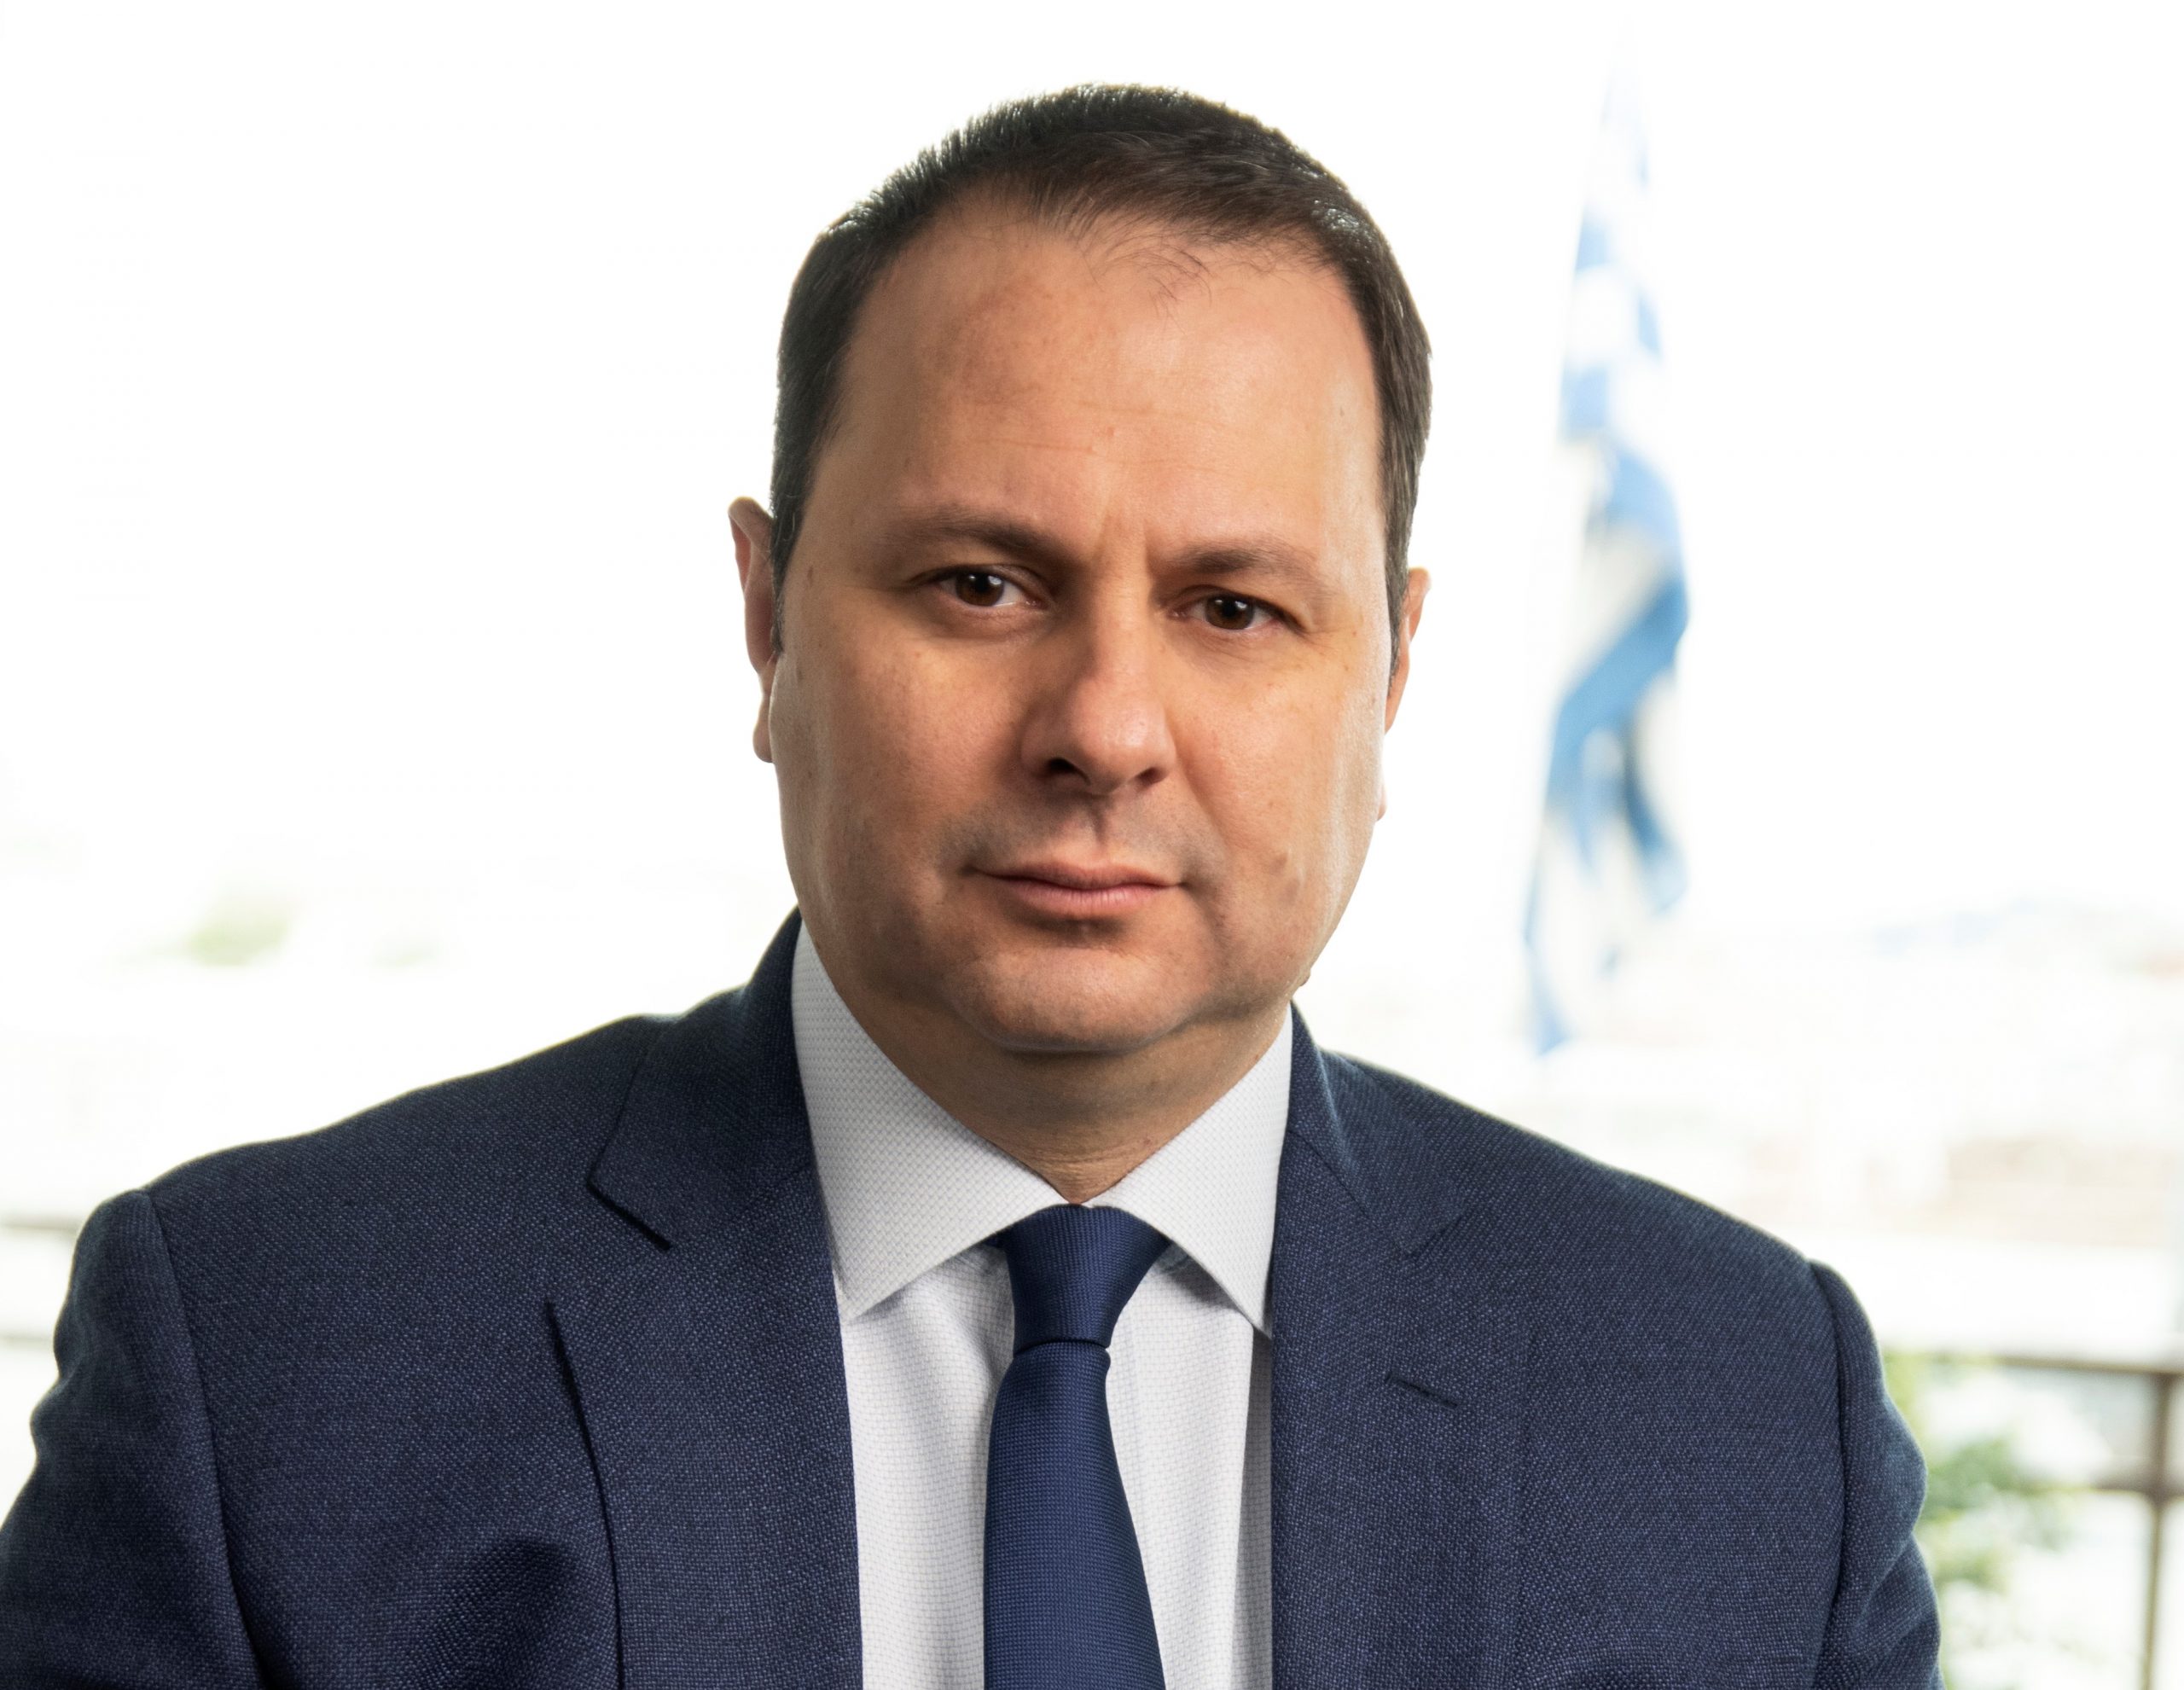 Σταμπουλίδης στον ΟΤ: Η Μονάδα Συμβάσεων Στρατηγικής Σημασίας του ΤΑΙΠΕΔ ωριμάζει 38 μεγάλα έργα 6,9 δισ. ευρώ